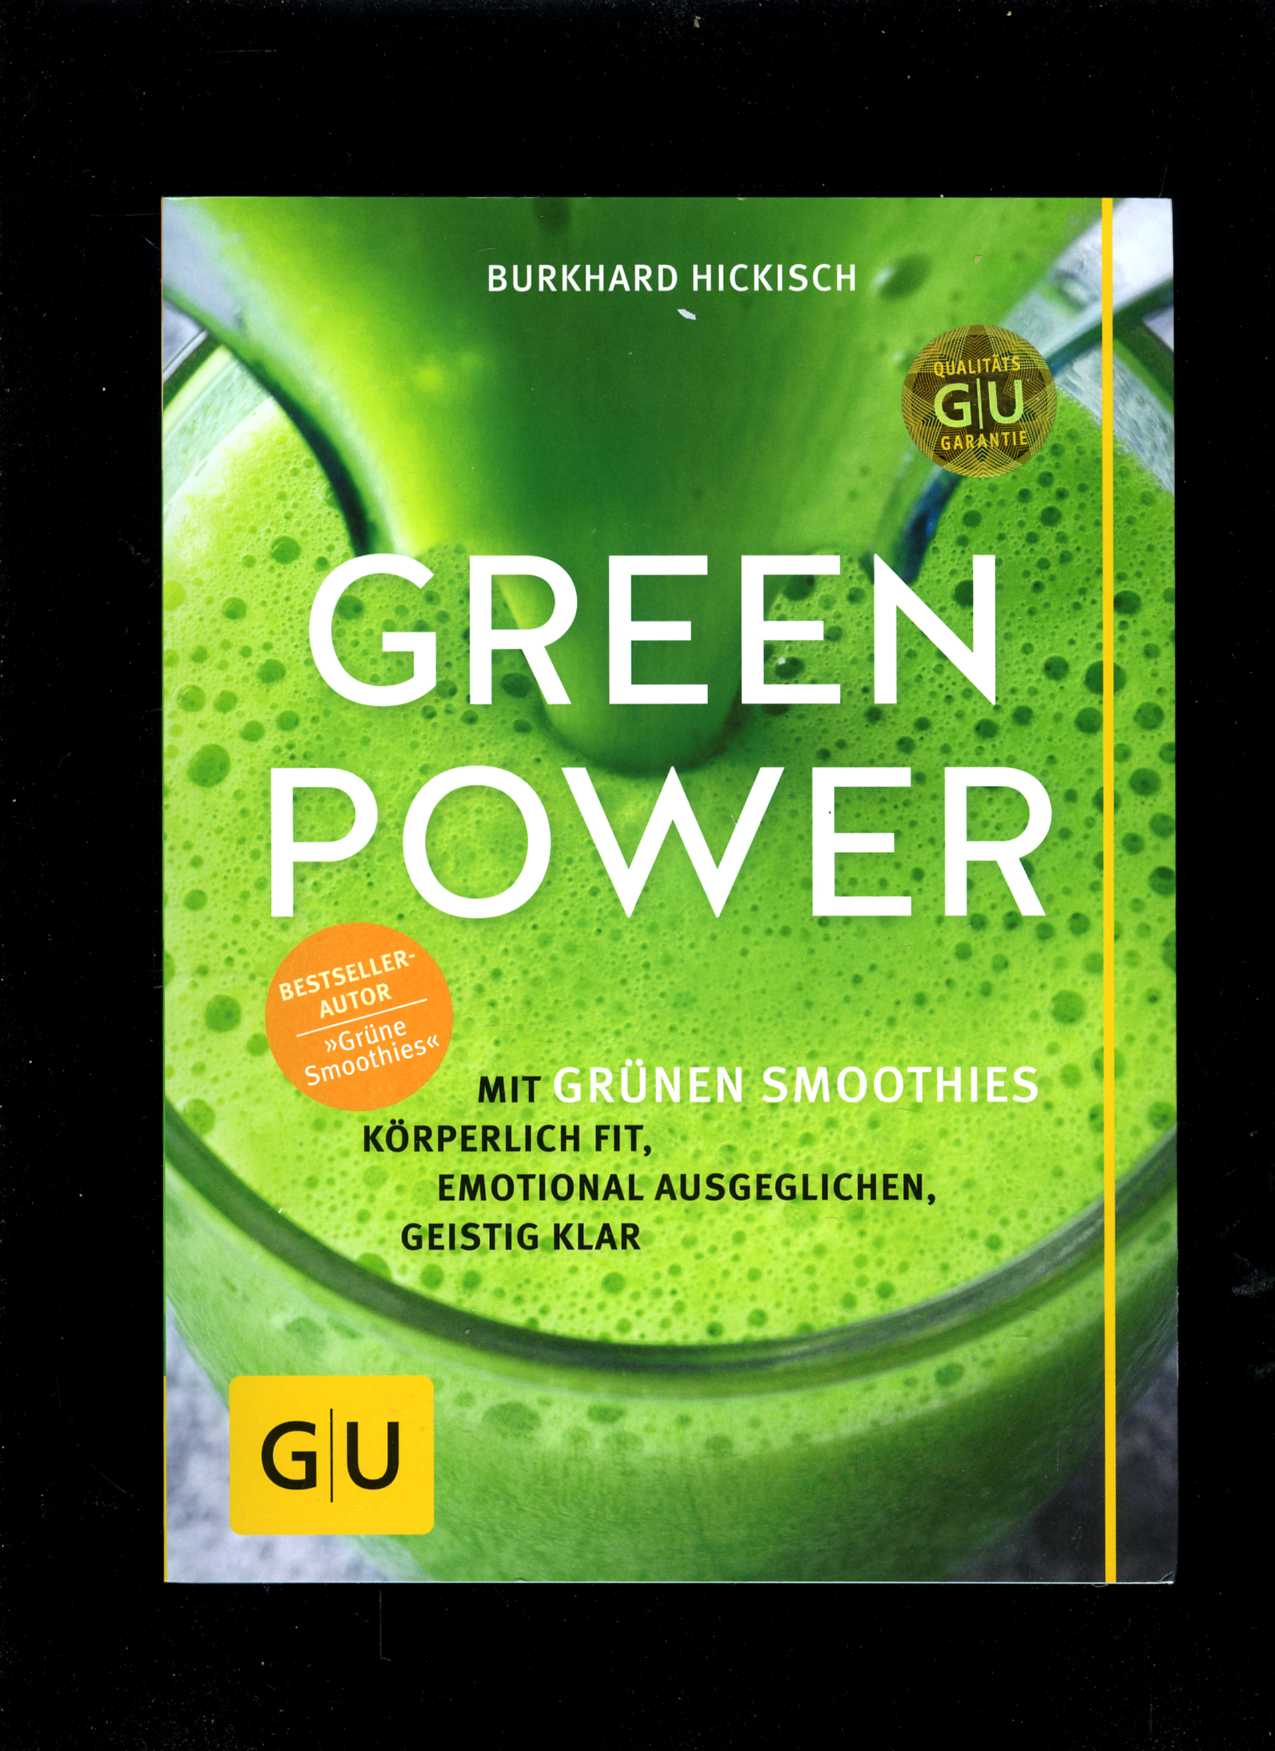 Green Power (Burkhard Hickisch)